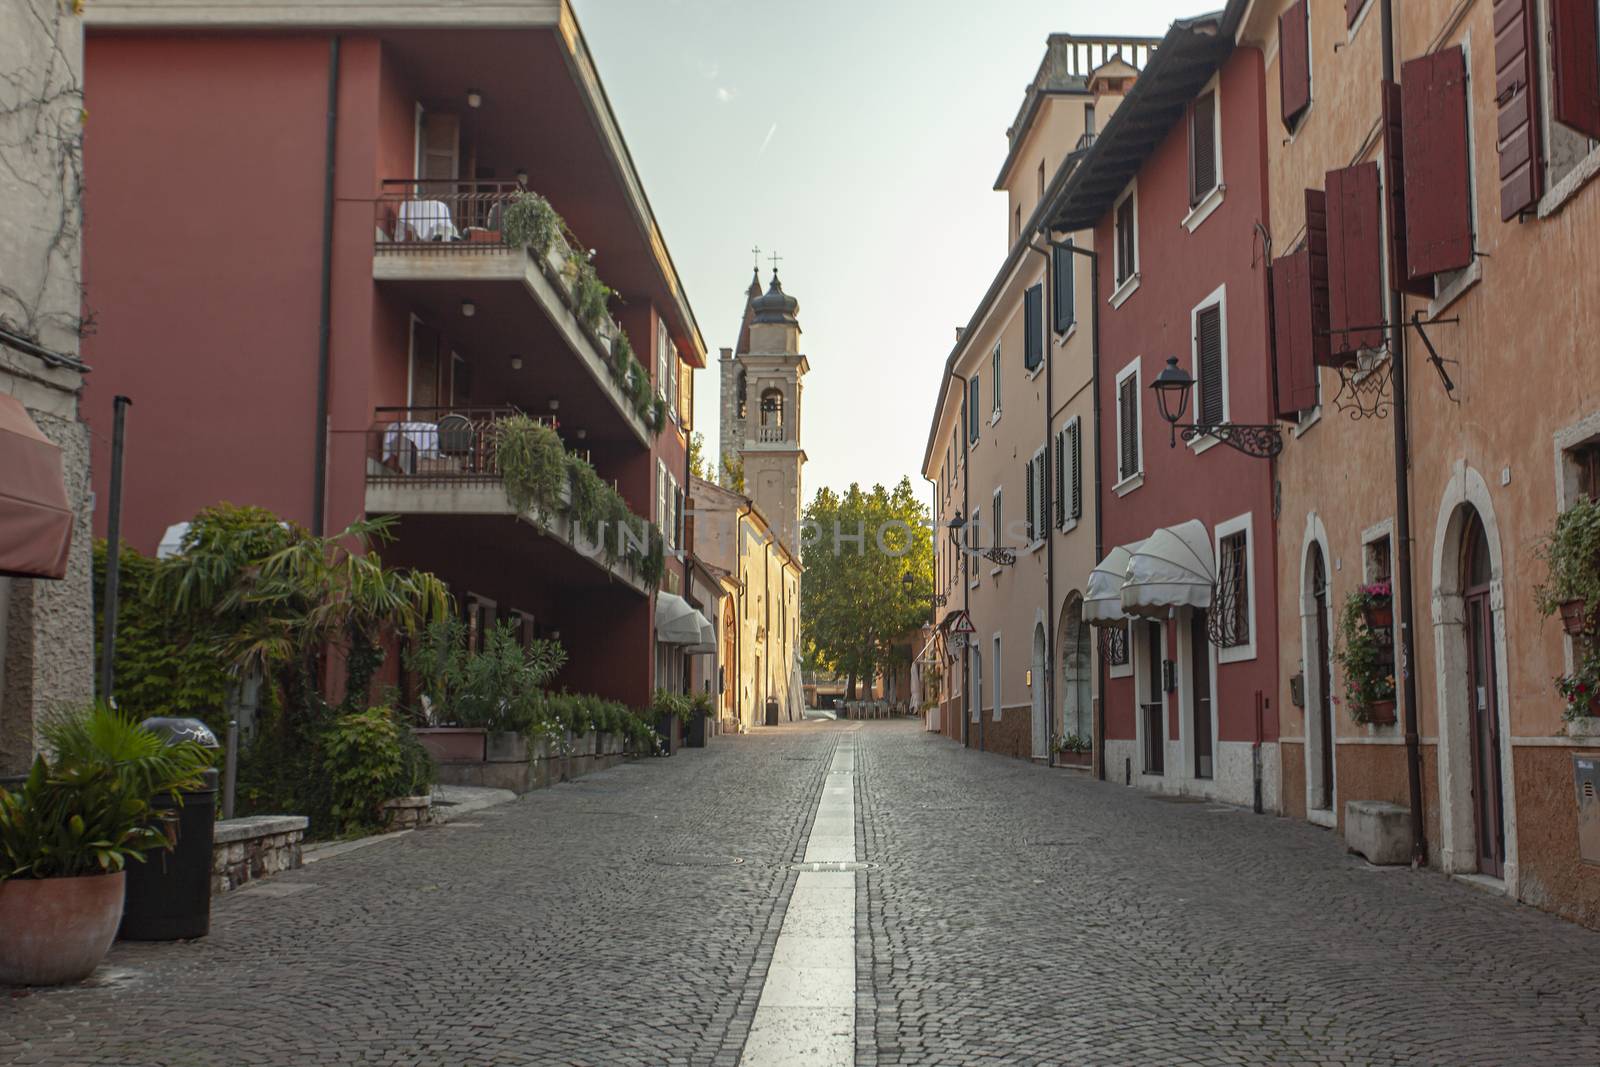 BARDOLINO, ITALY 16 SEPTEMBER 2020: Characteristic Alley of Bardolino in Italy